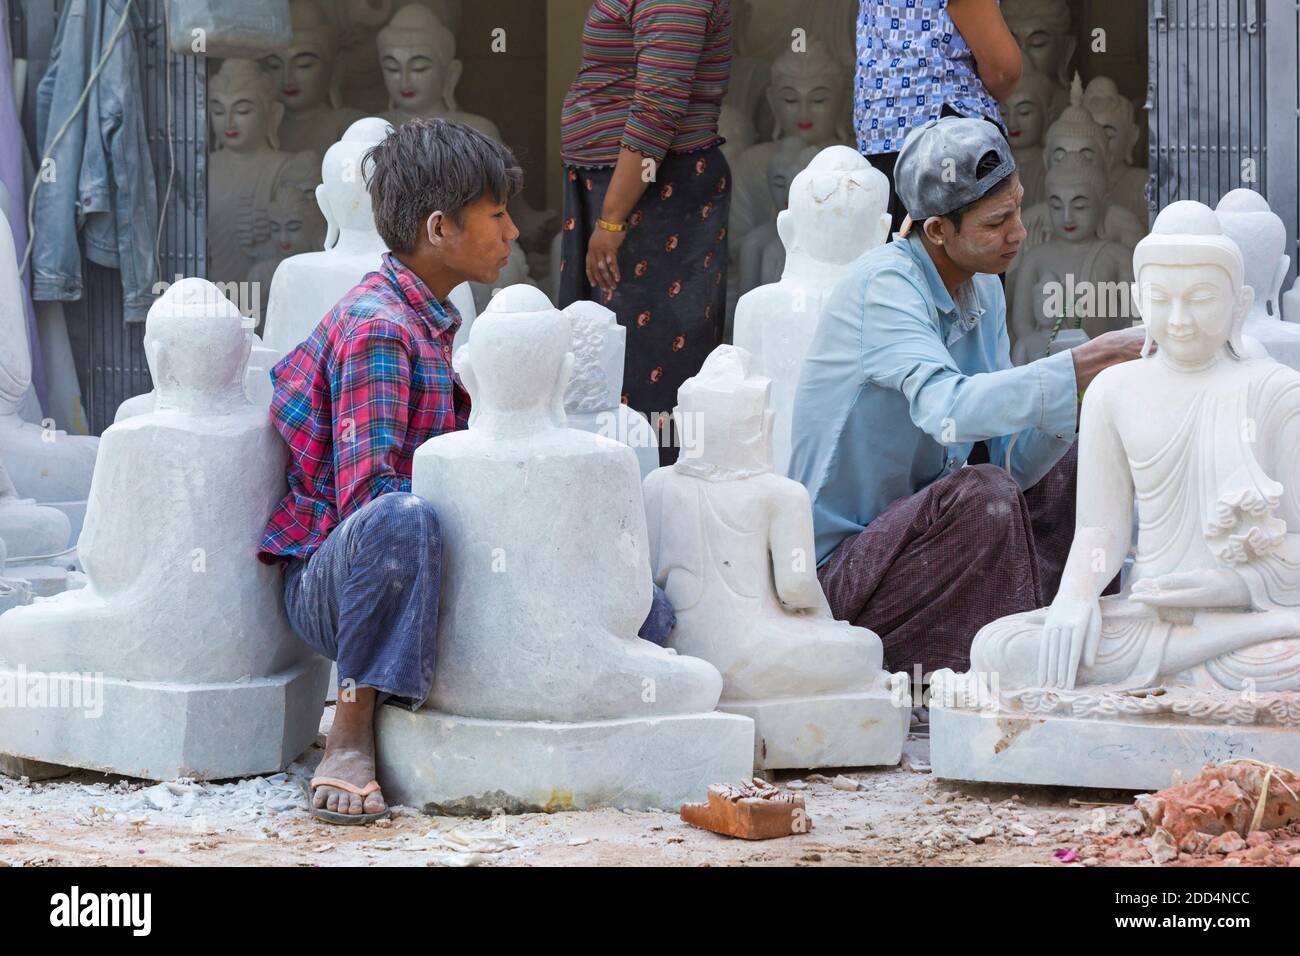 Uomini locali che scolpiscono un Buddha di marmo, Amarapura Mandalay, Myanmar (Birmania), Asia nel mese di febbraio - lavorando a laboratori di scultura in pietra di marmo ricoperti di polvere Foto Stock